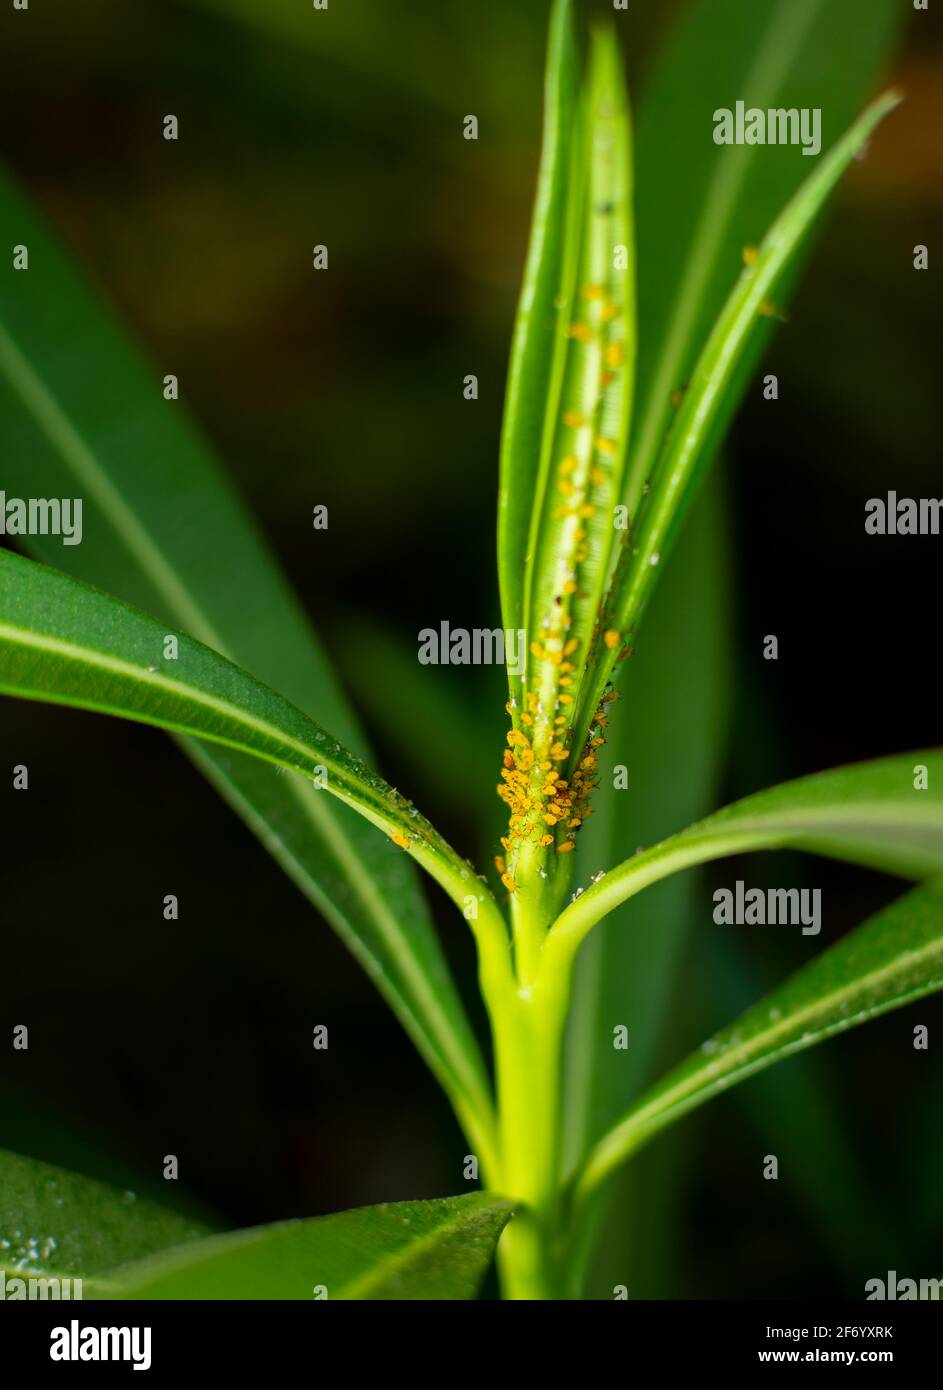 Los áfidos de oleante también conocidos como áfidos de maleza de la milkweed que son peste del insecto de la planta de la milkweed. El áfido de Oleander es un insecto amarillo brillante con patas negras. Foto de stock